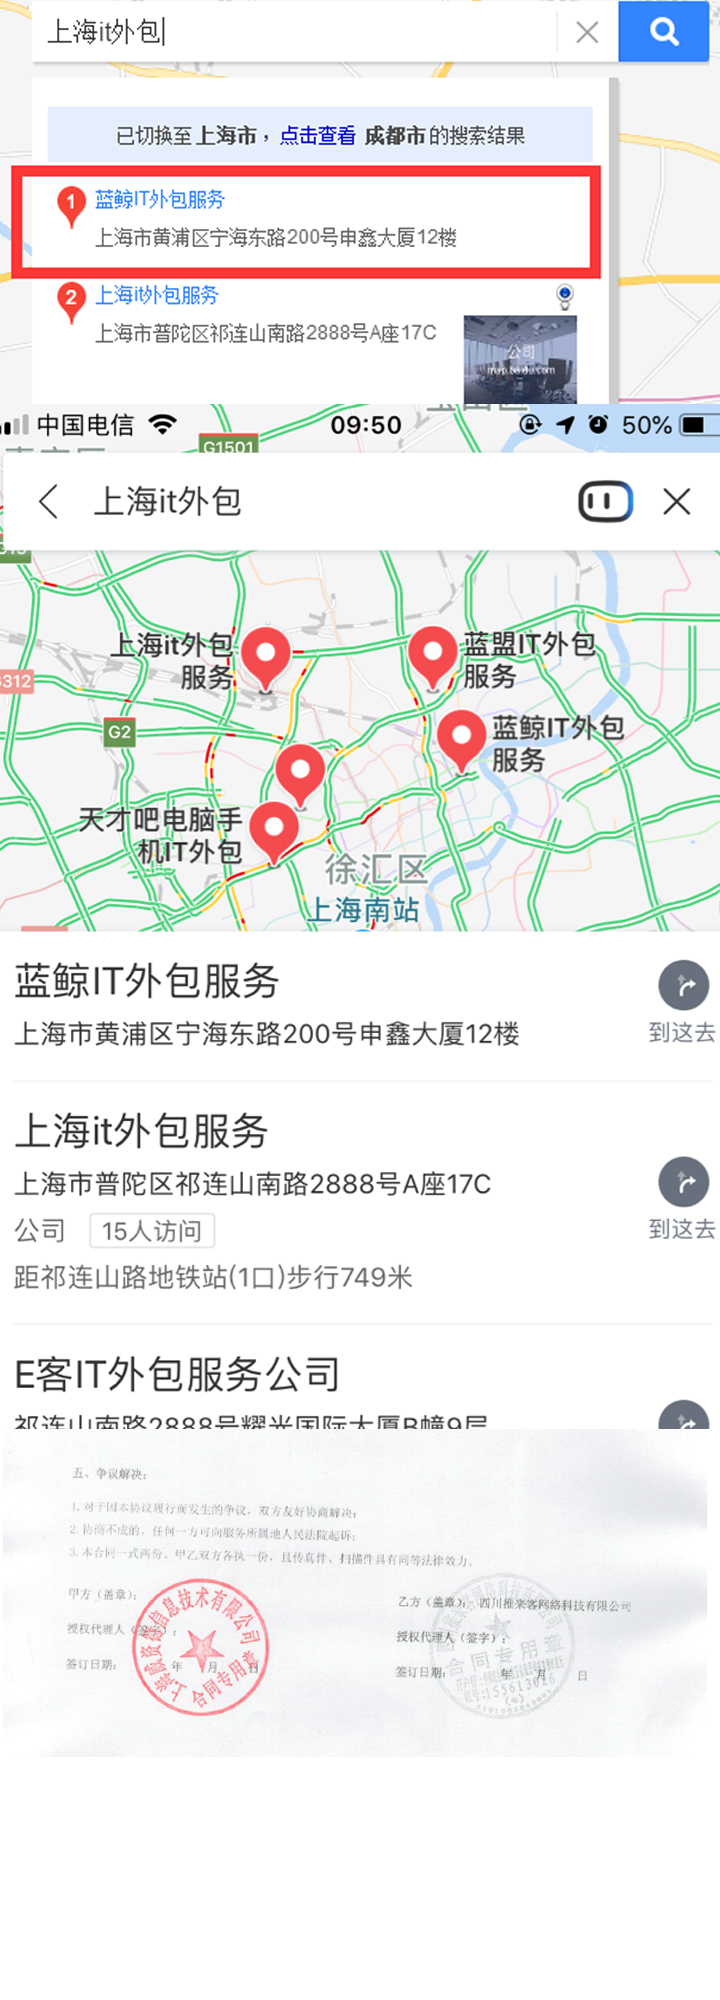 上海IT外包百度地图排名案例